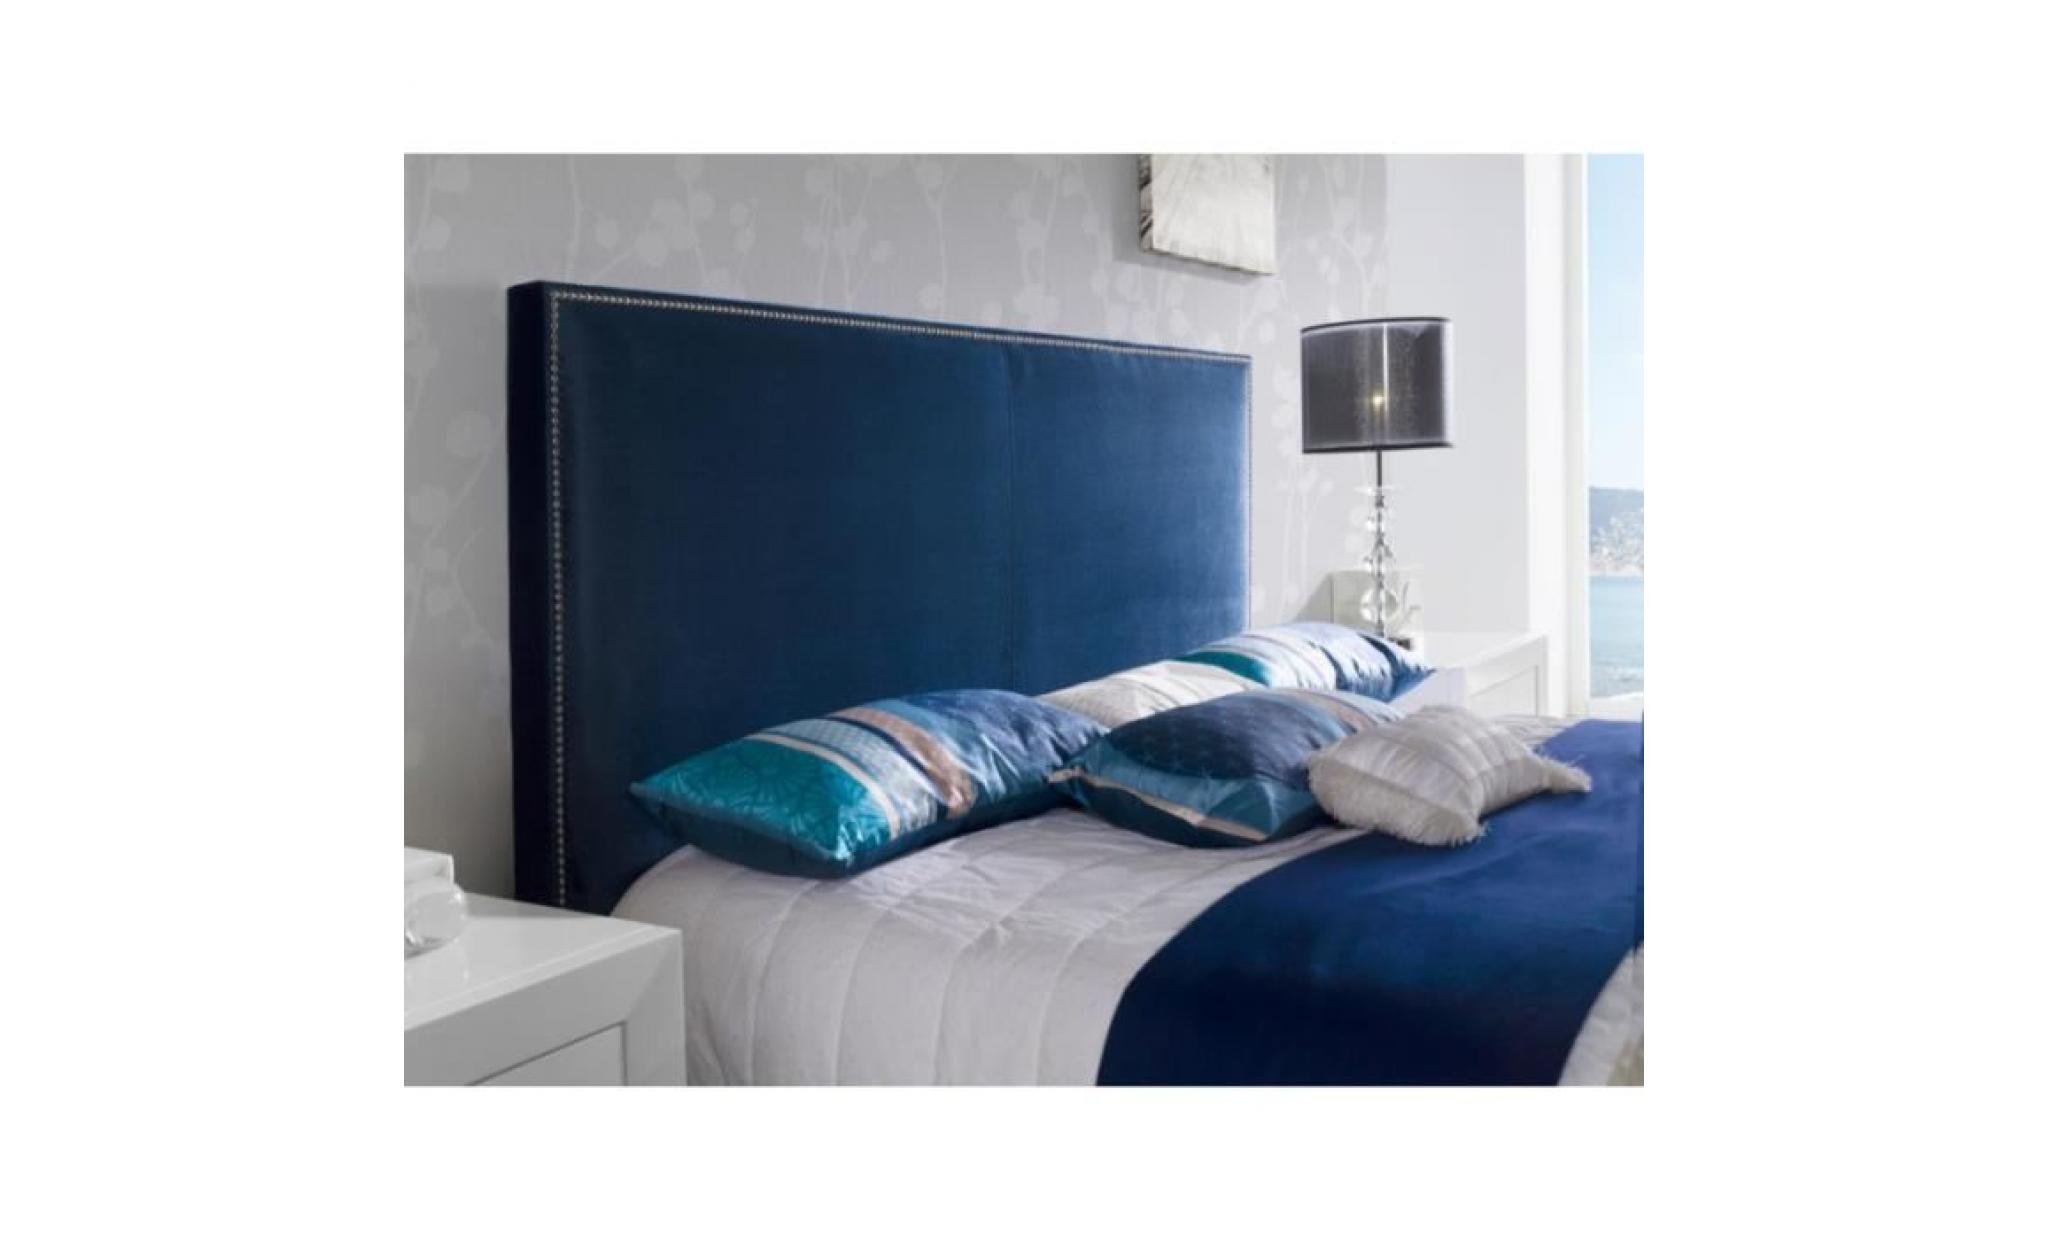 tête de lit anapu en velours bleu marine pour lit queen size   l 172 x h 118